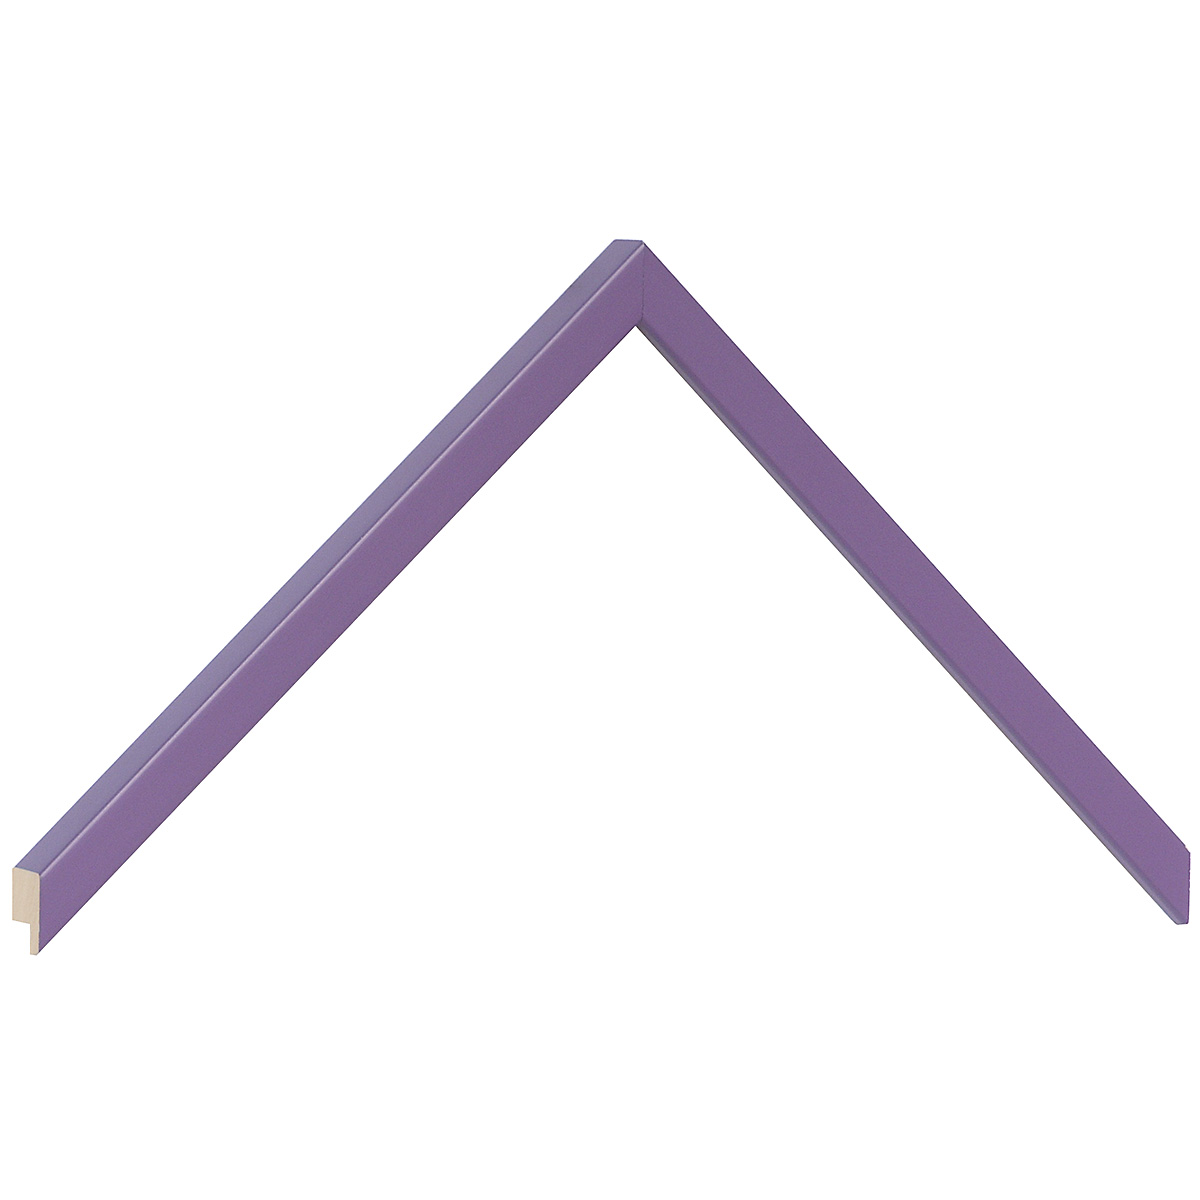 Asta in ramino piatta mm 10 - finitura opaca - color viola - Campione